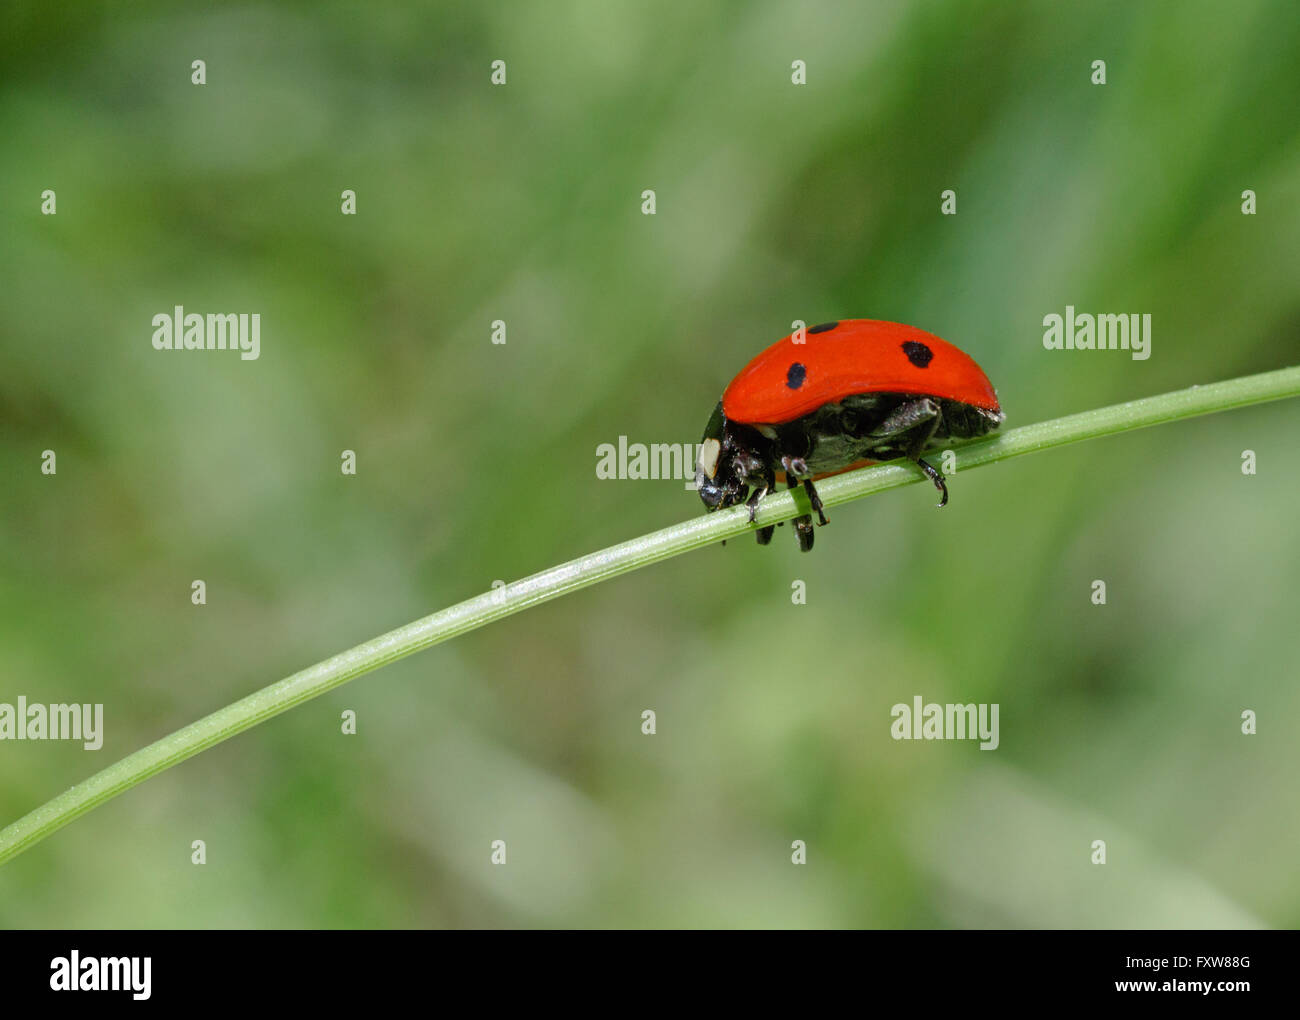 close up of ladybug sitting on blade Stock Photo